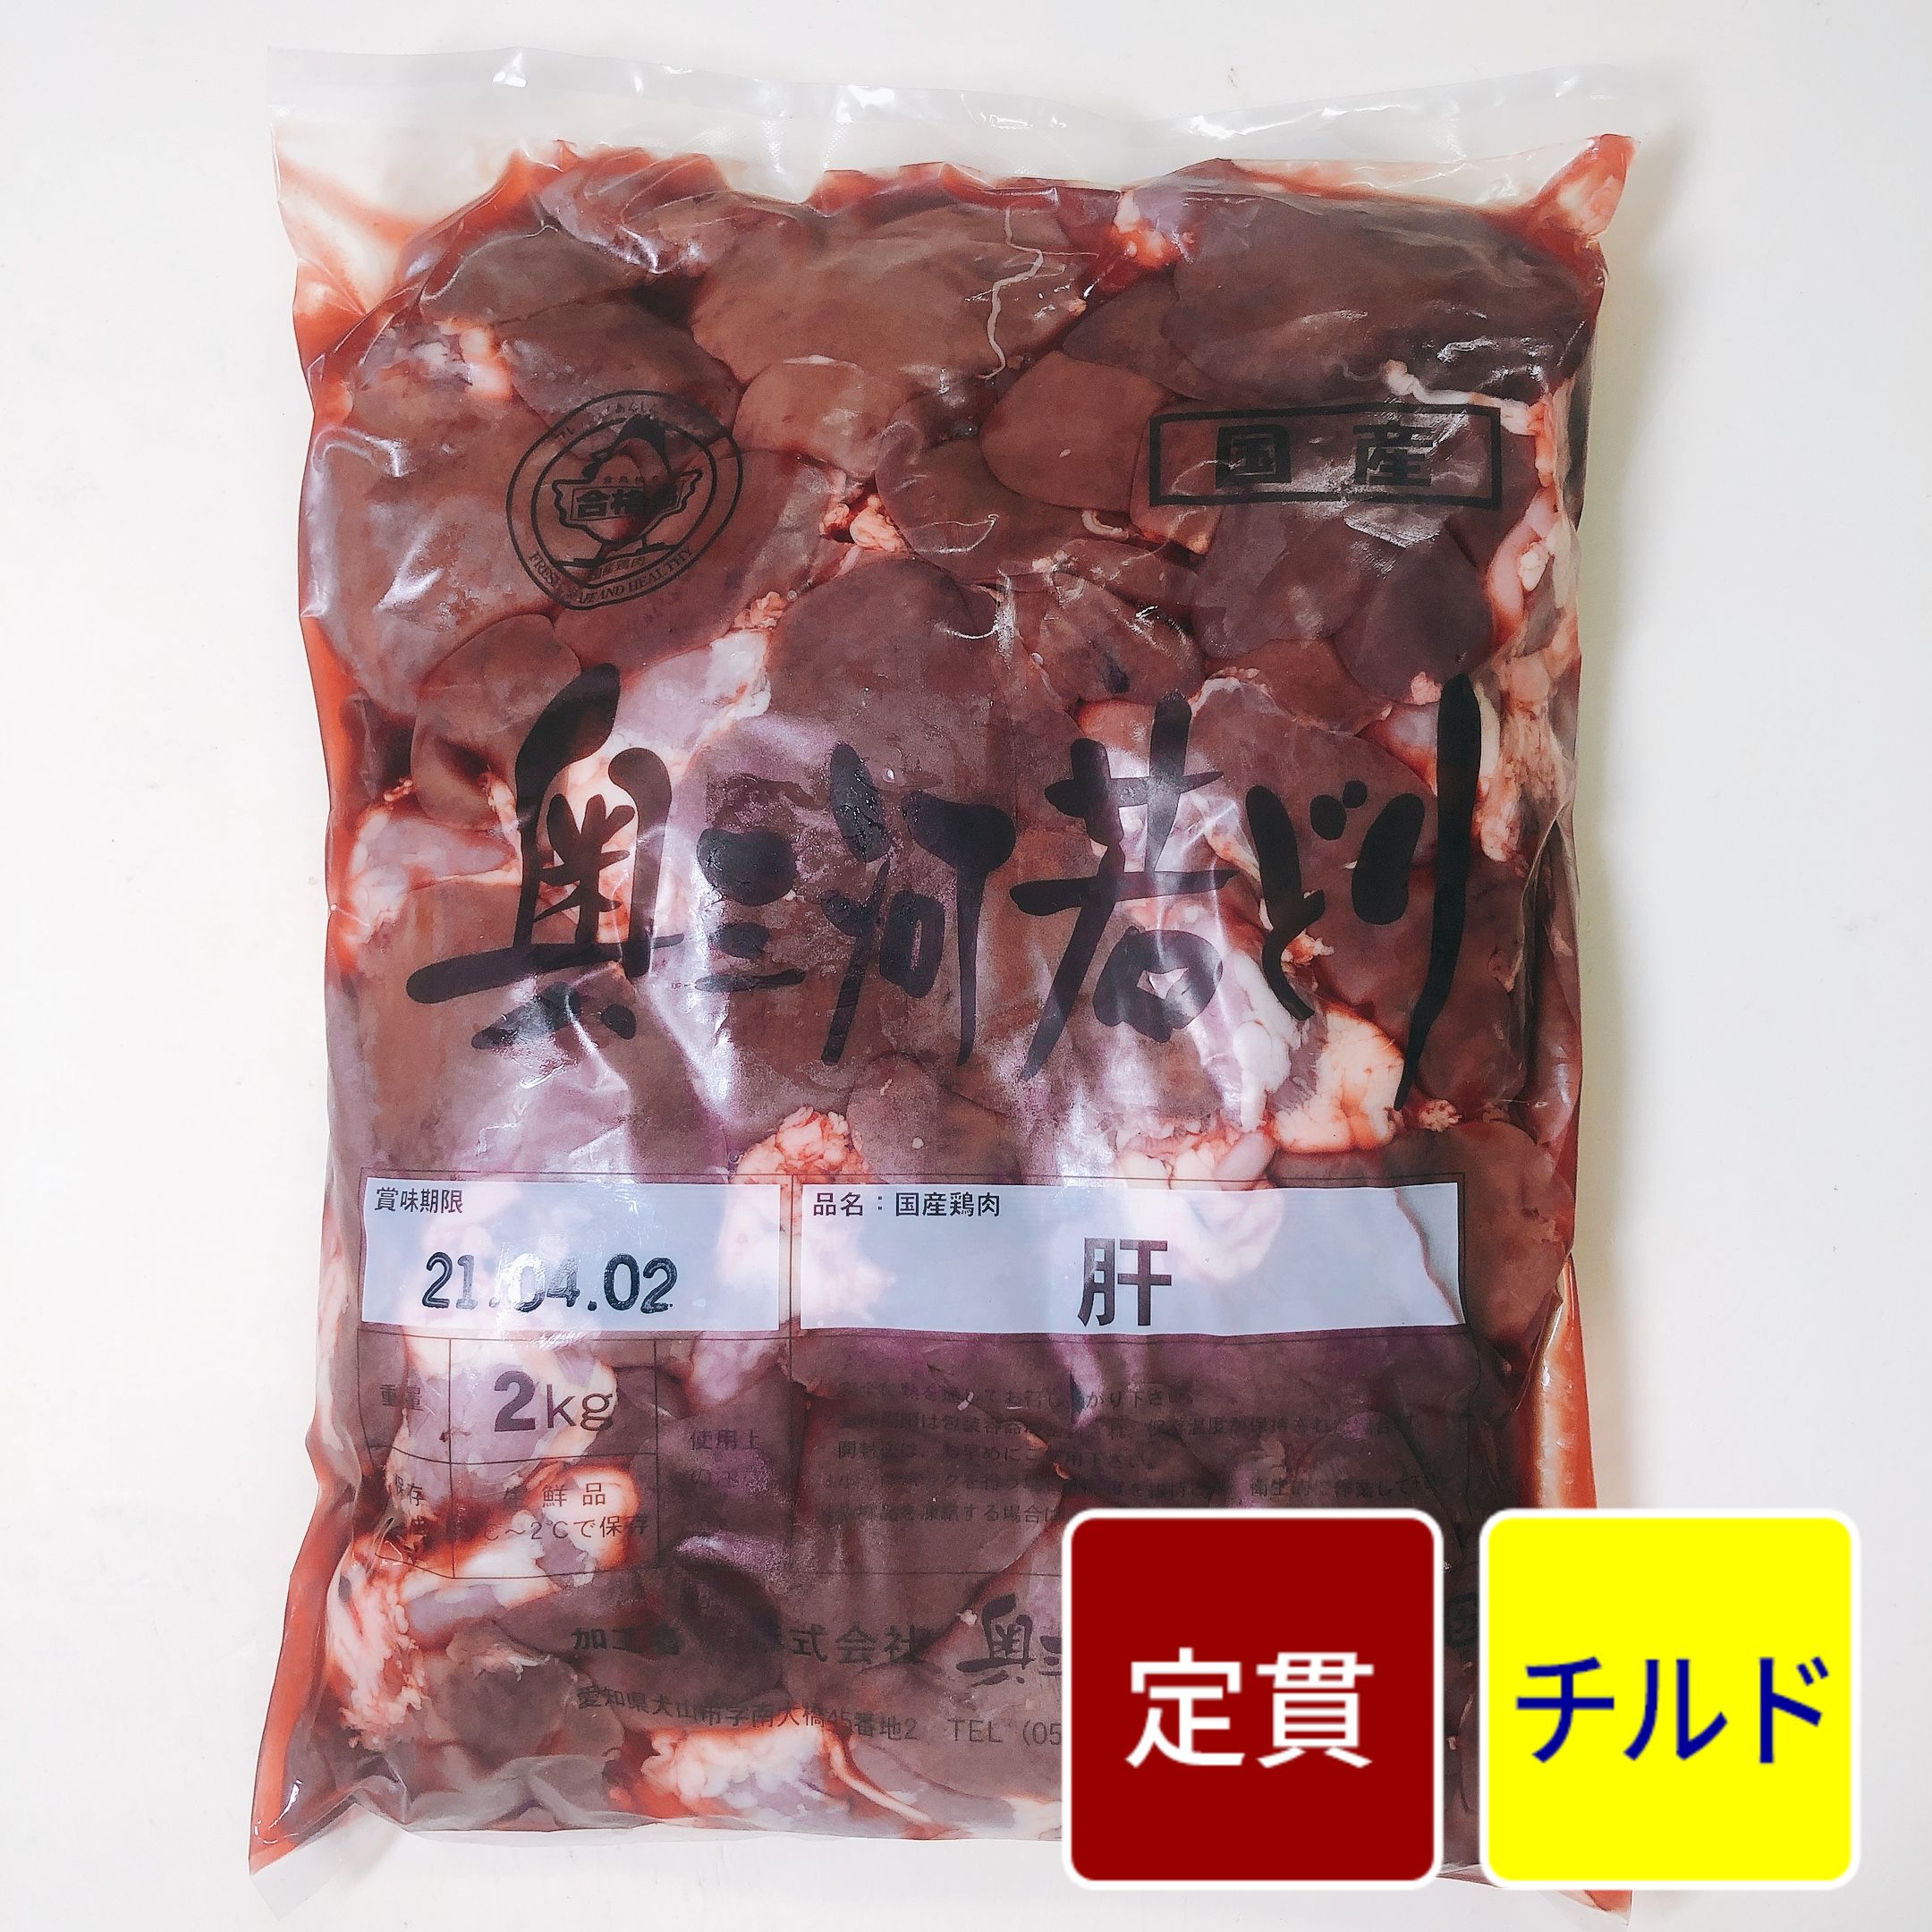 スギモトフーダーズ / 国産鶏 レバー 2kg【1パック】【定貫】